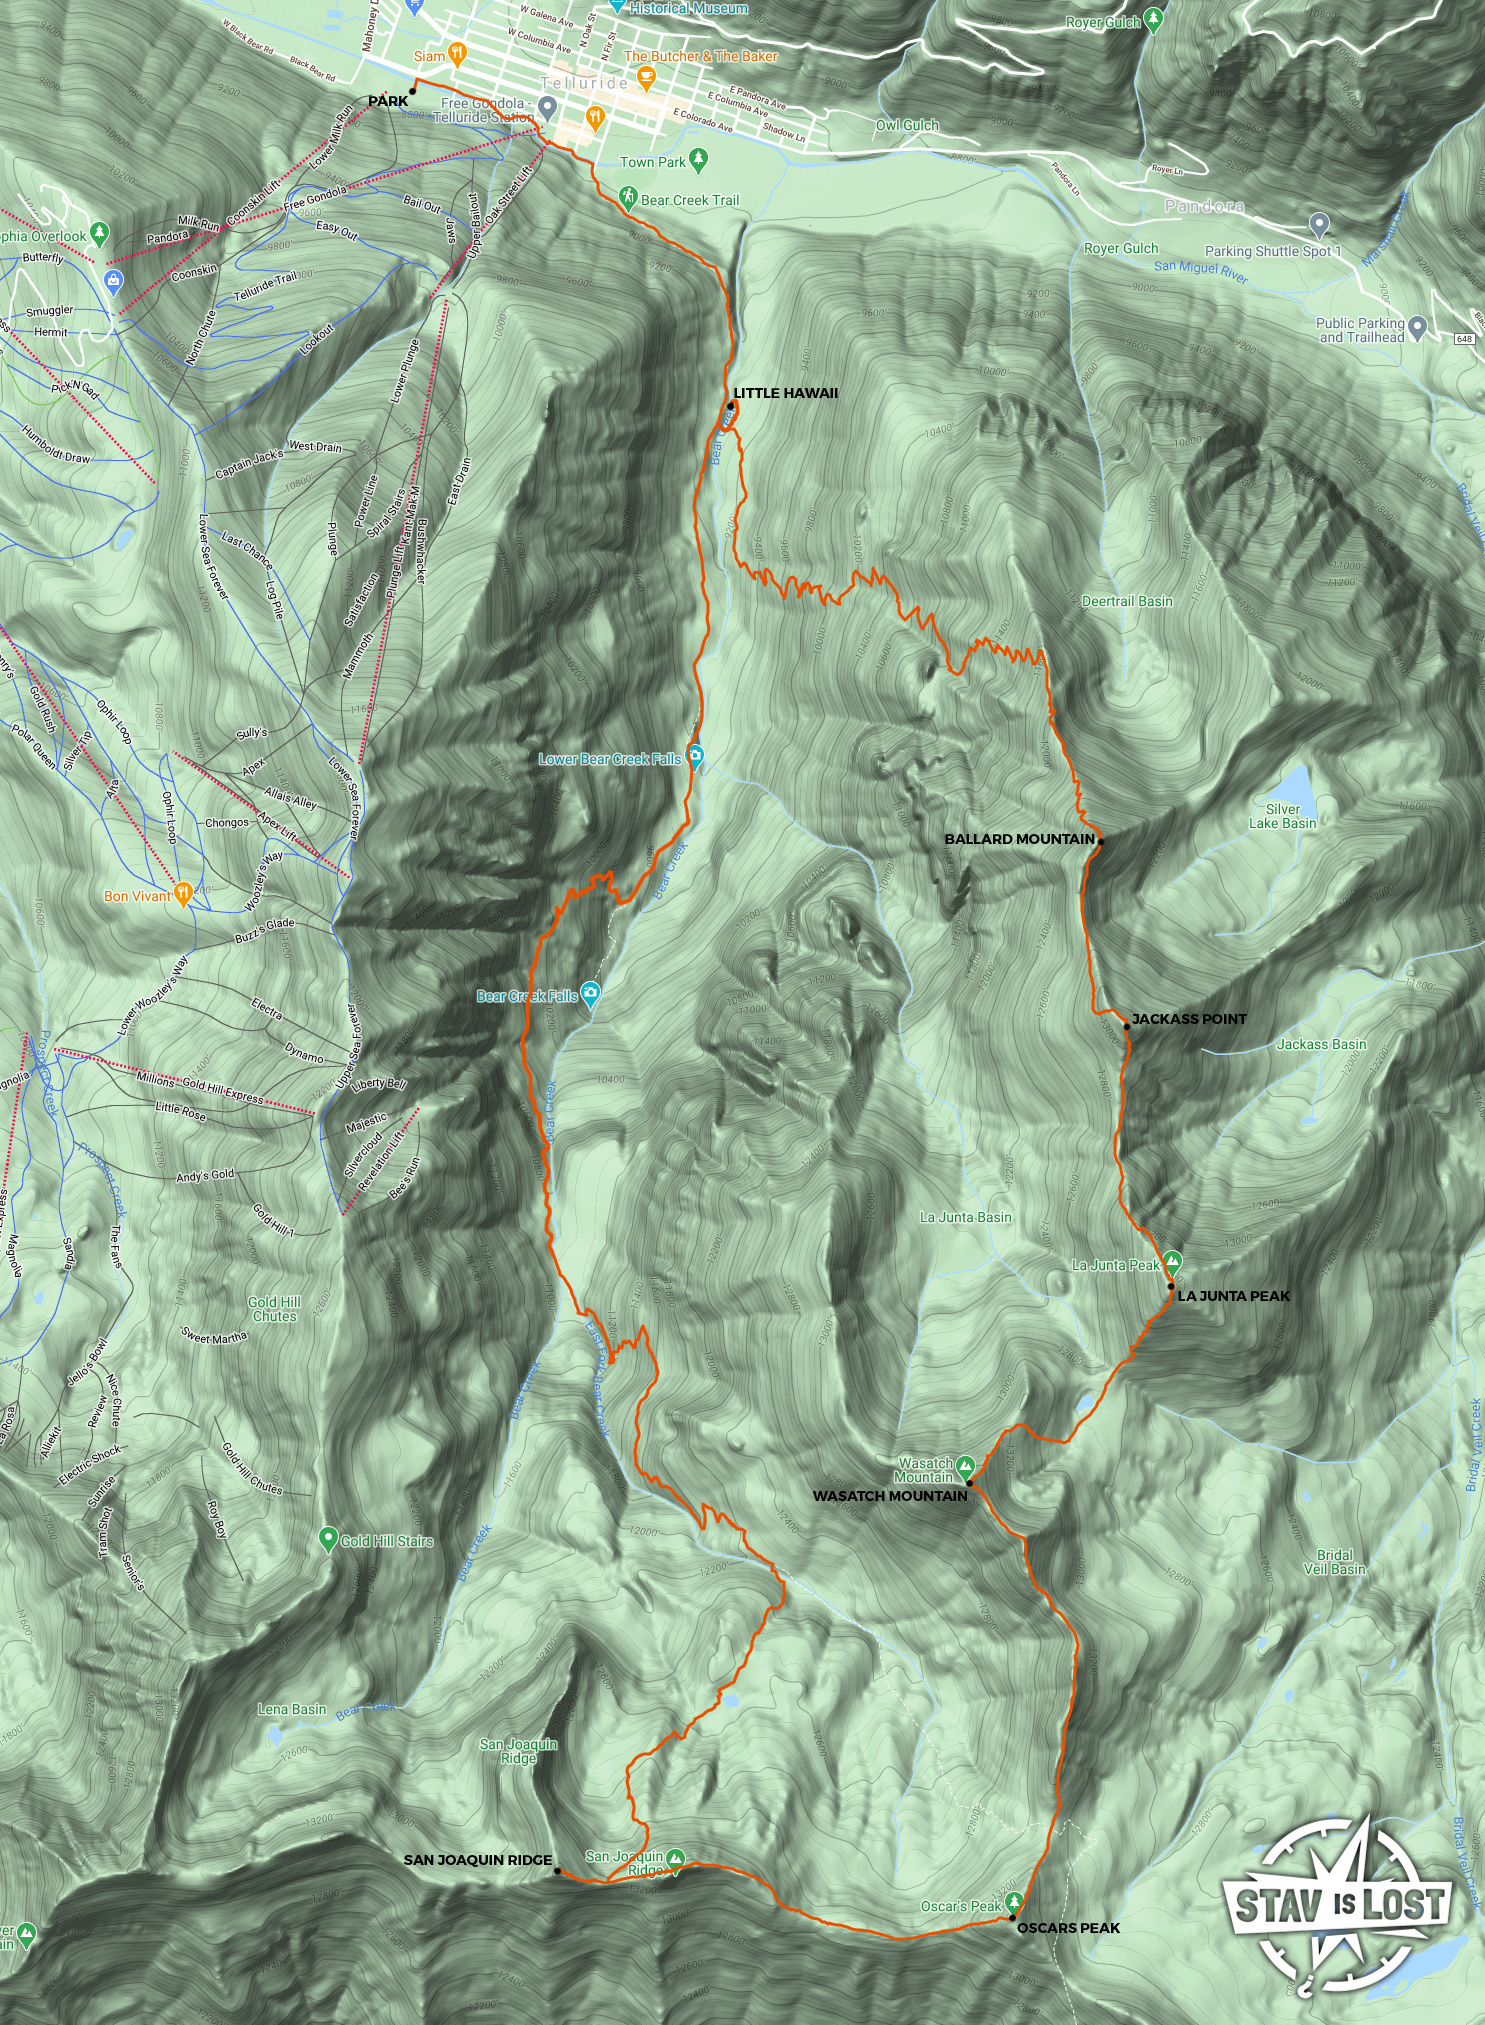 map for La Junta Peak, Wasatch Peak, San Joaquin Ridge via Bear Creek by stav is lost